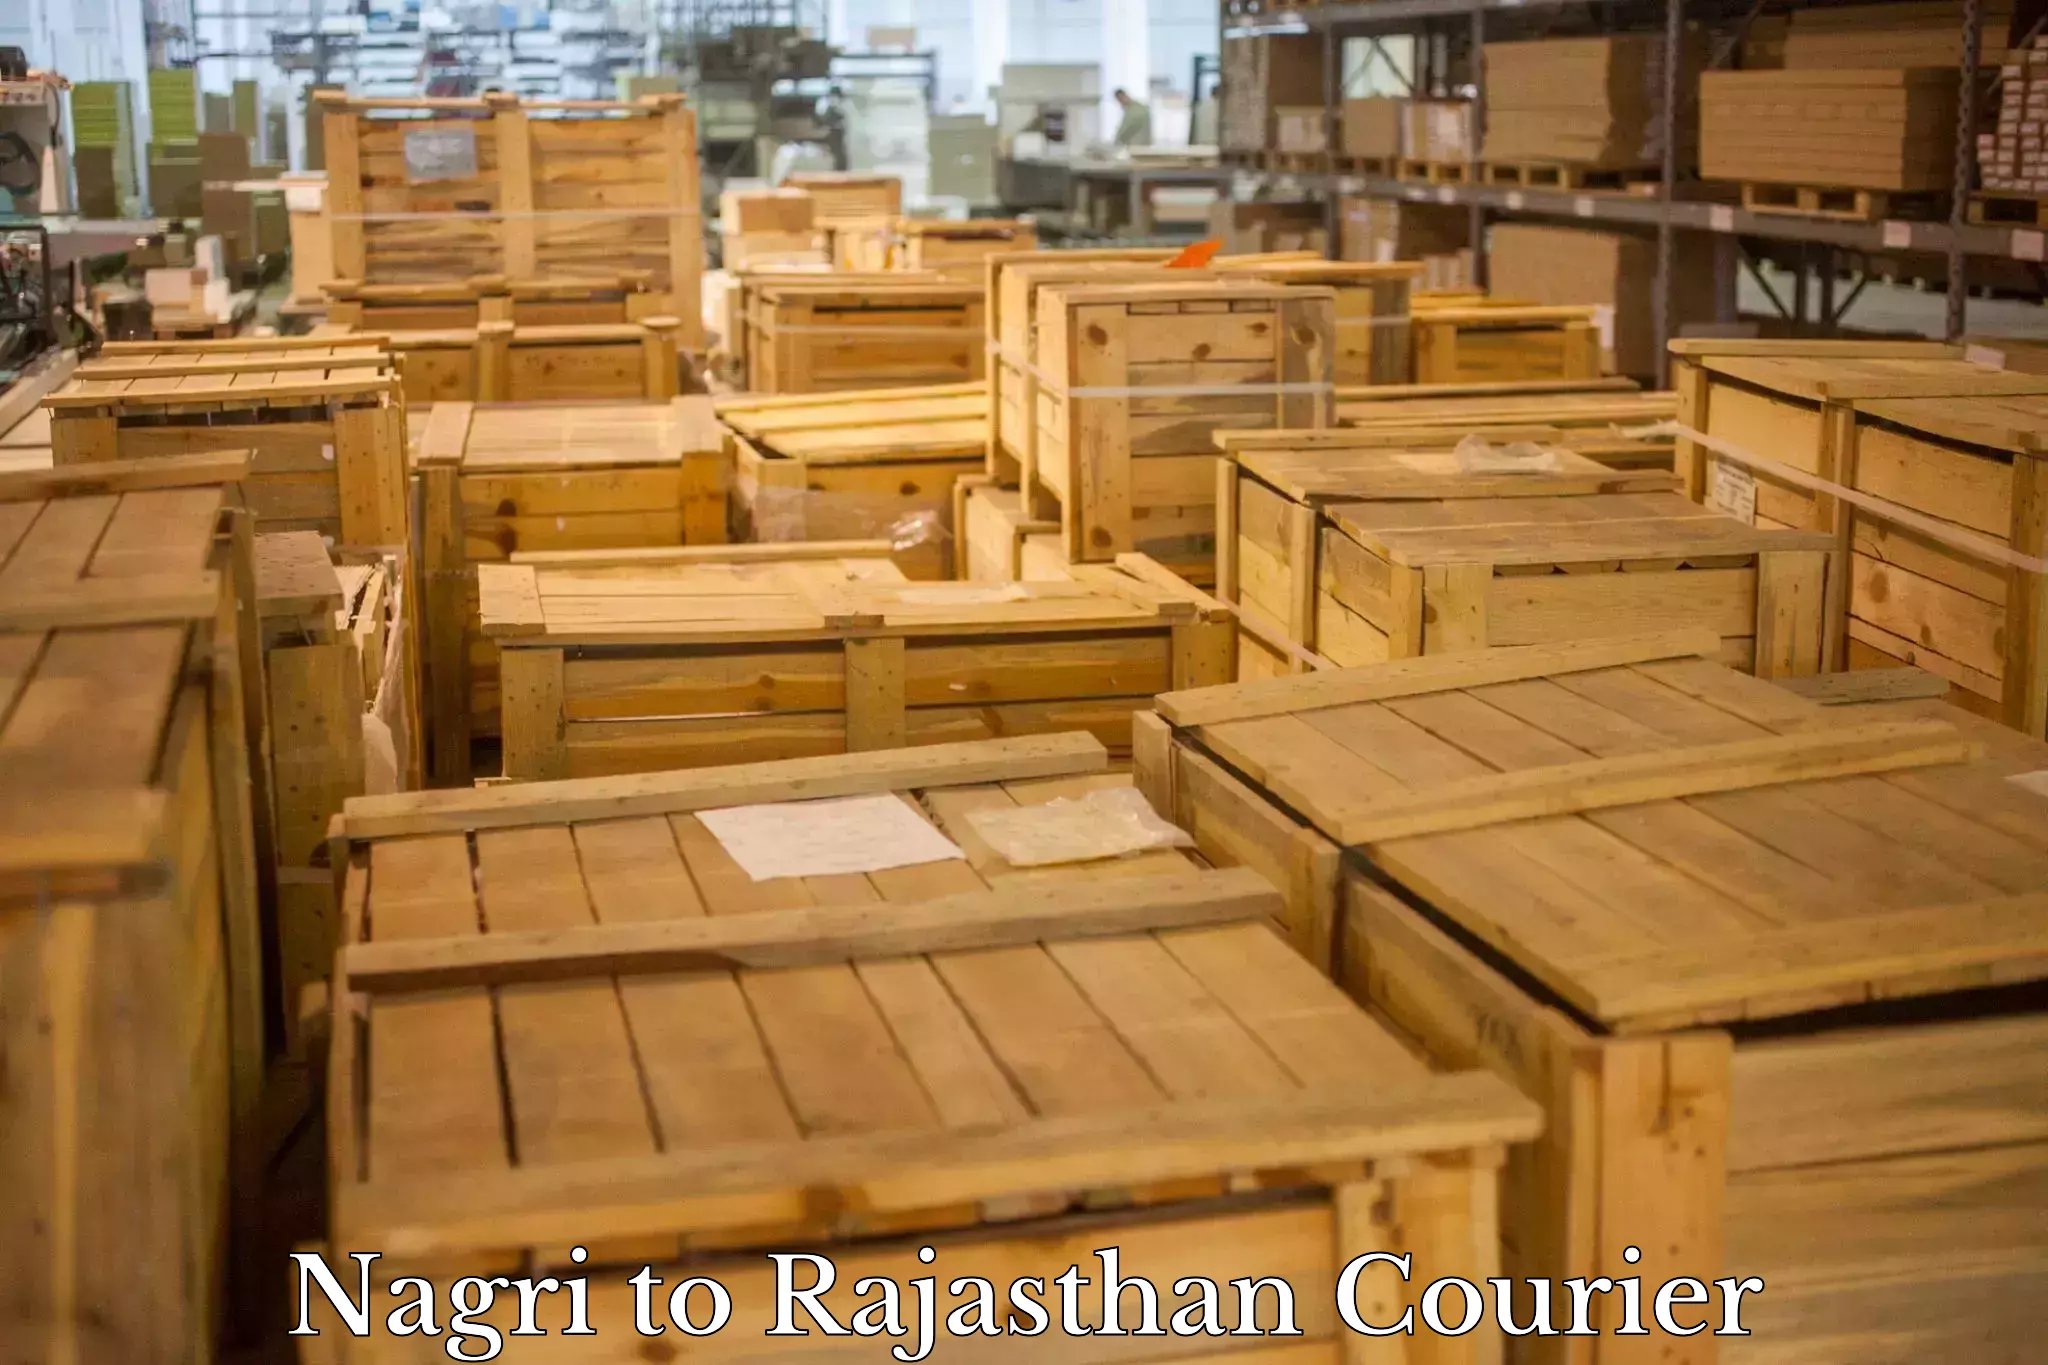 Efficient cargo handling Nagri to Rajasthan